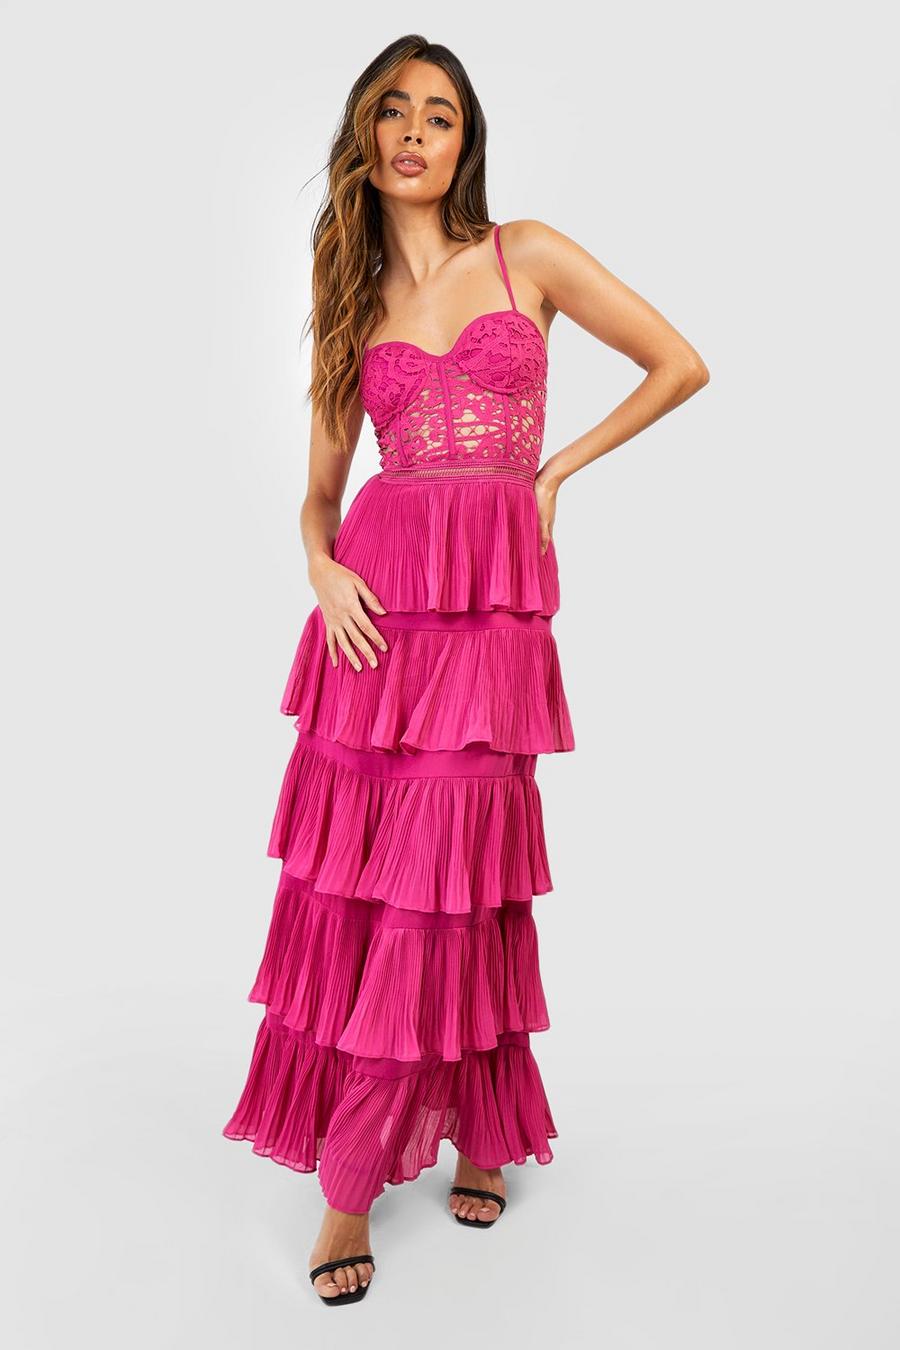 Lace Pink Maxi Dress